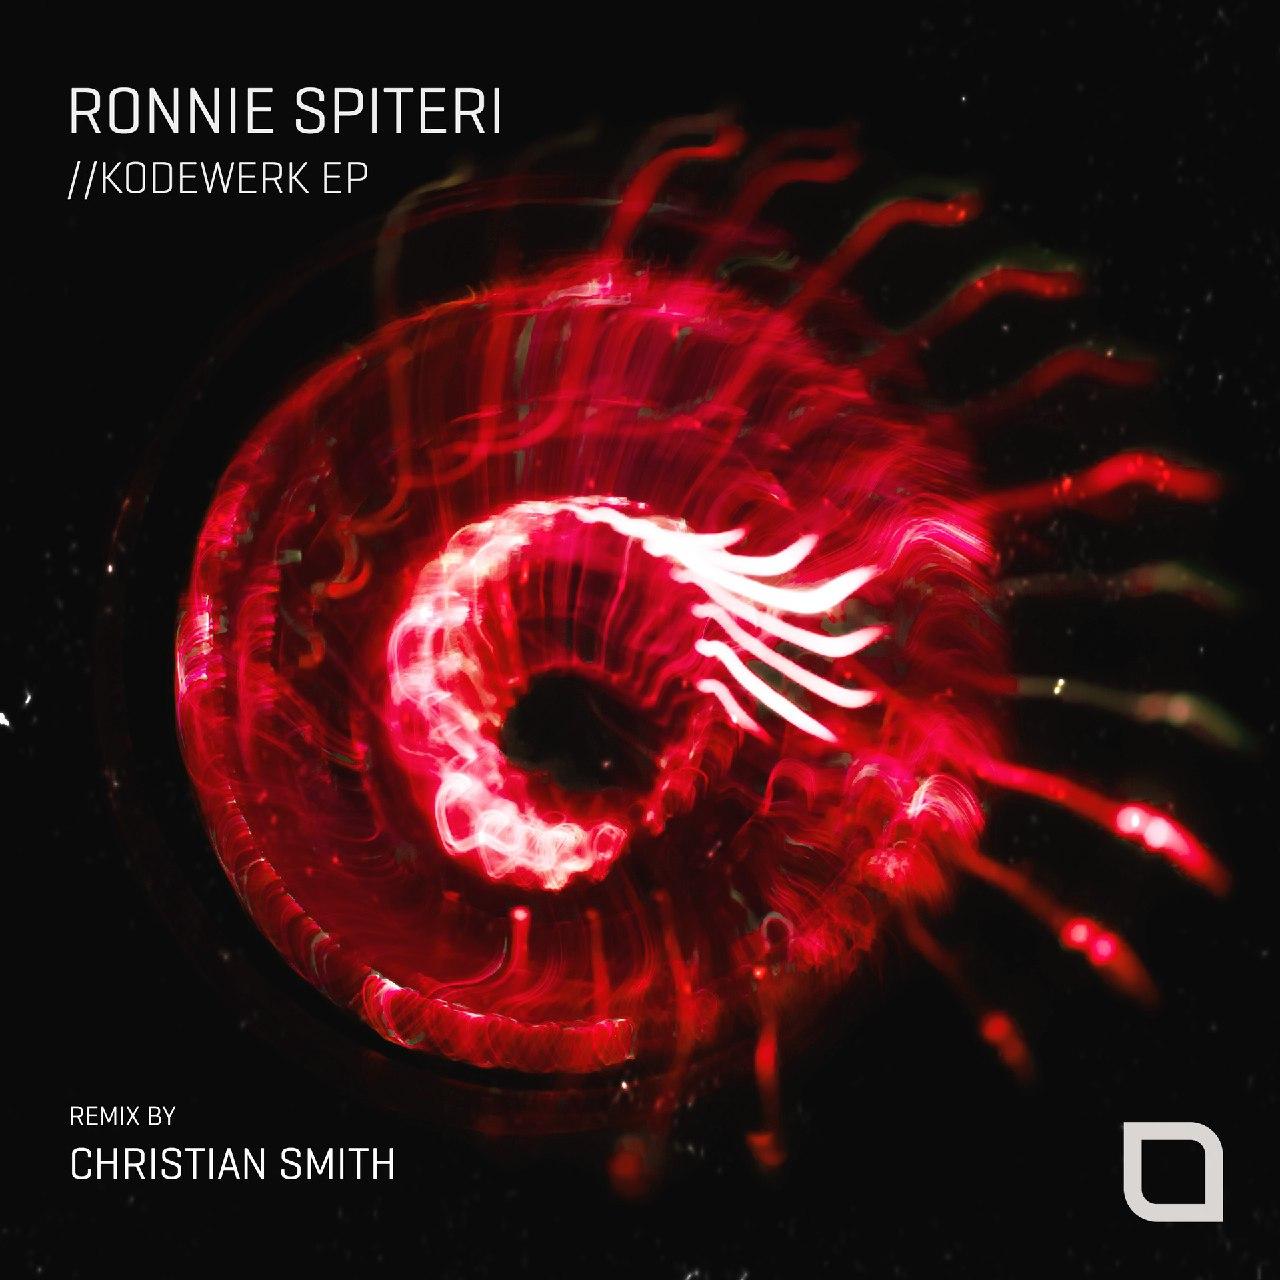 Ronnie Spiteri - Kodewerk (Christian Smith Remix)